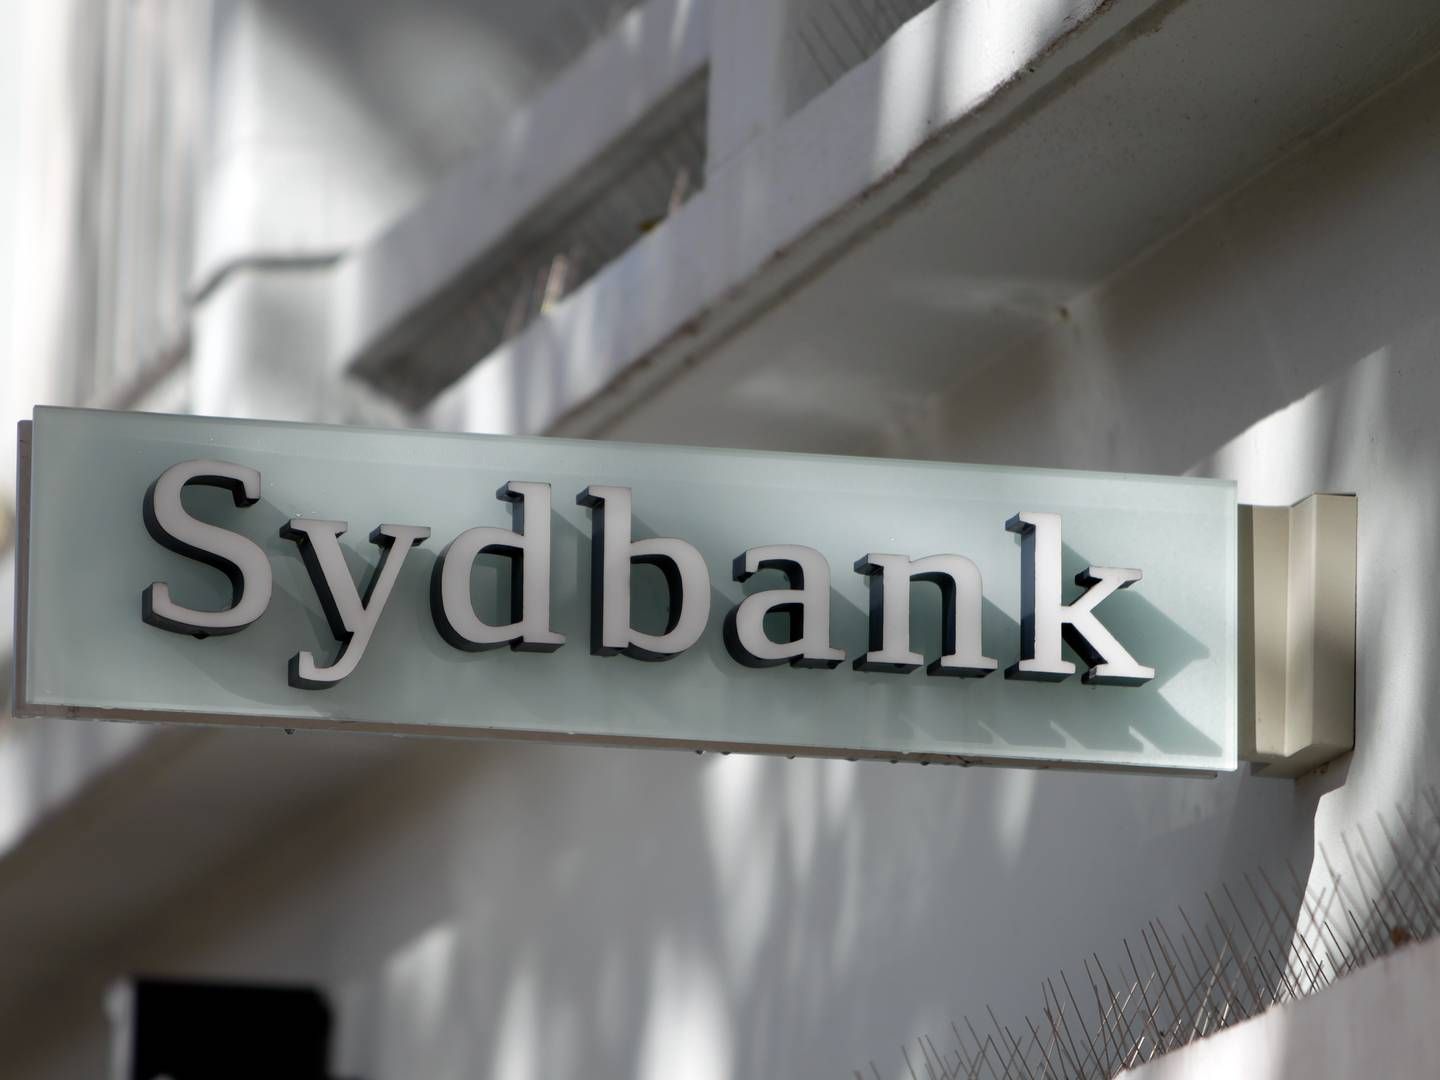 Sydbank er vurderet som årets mest attraktive bank i en kundeundersøgelse. | Foto: Niels Hougaard/Jyllands-Posten/Ritzau Scanpix